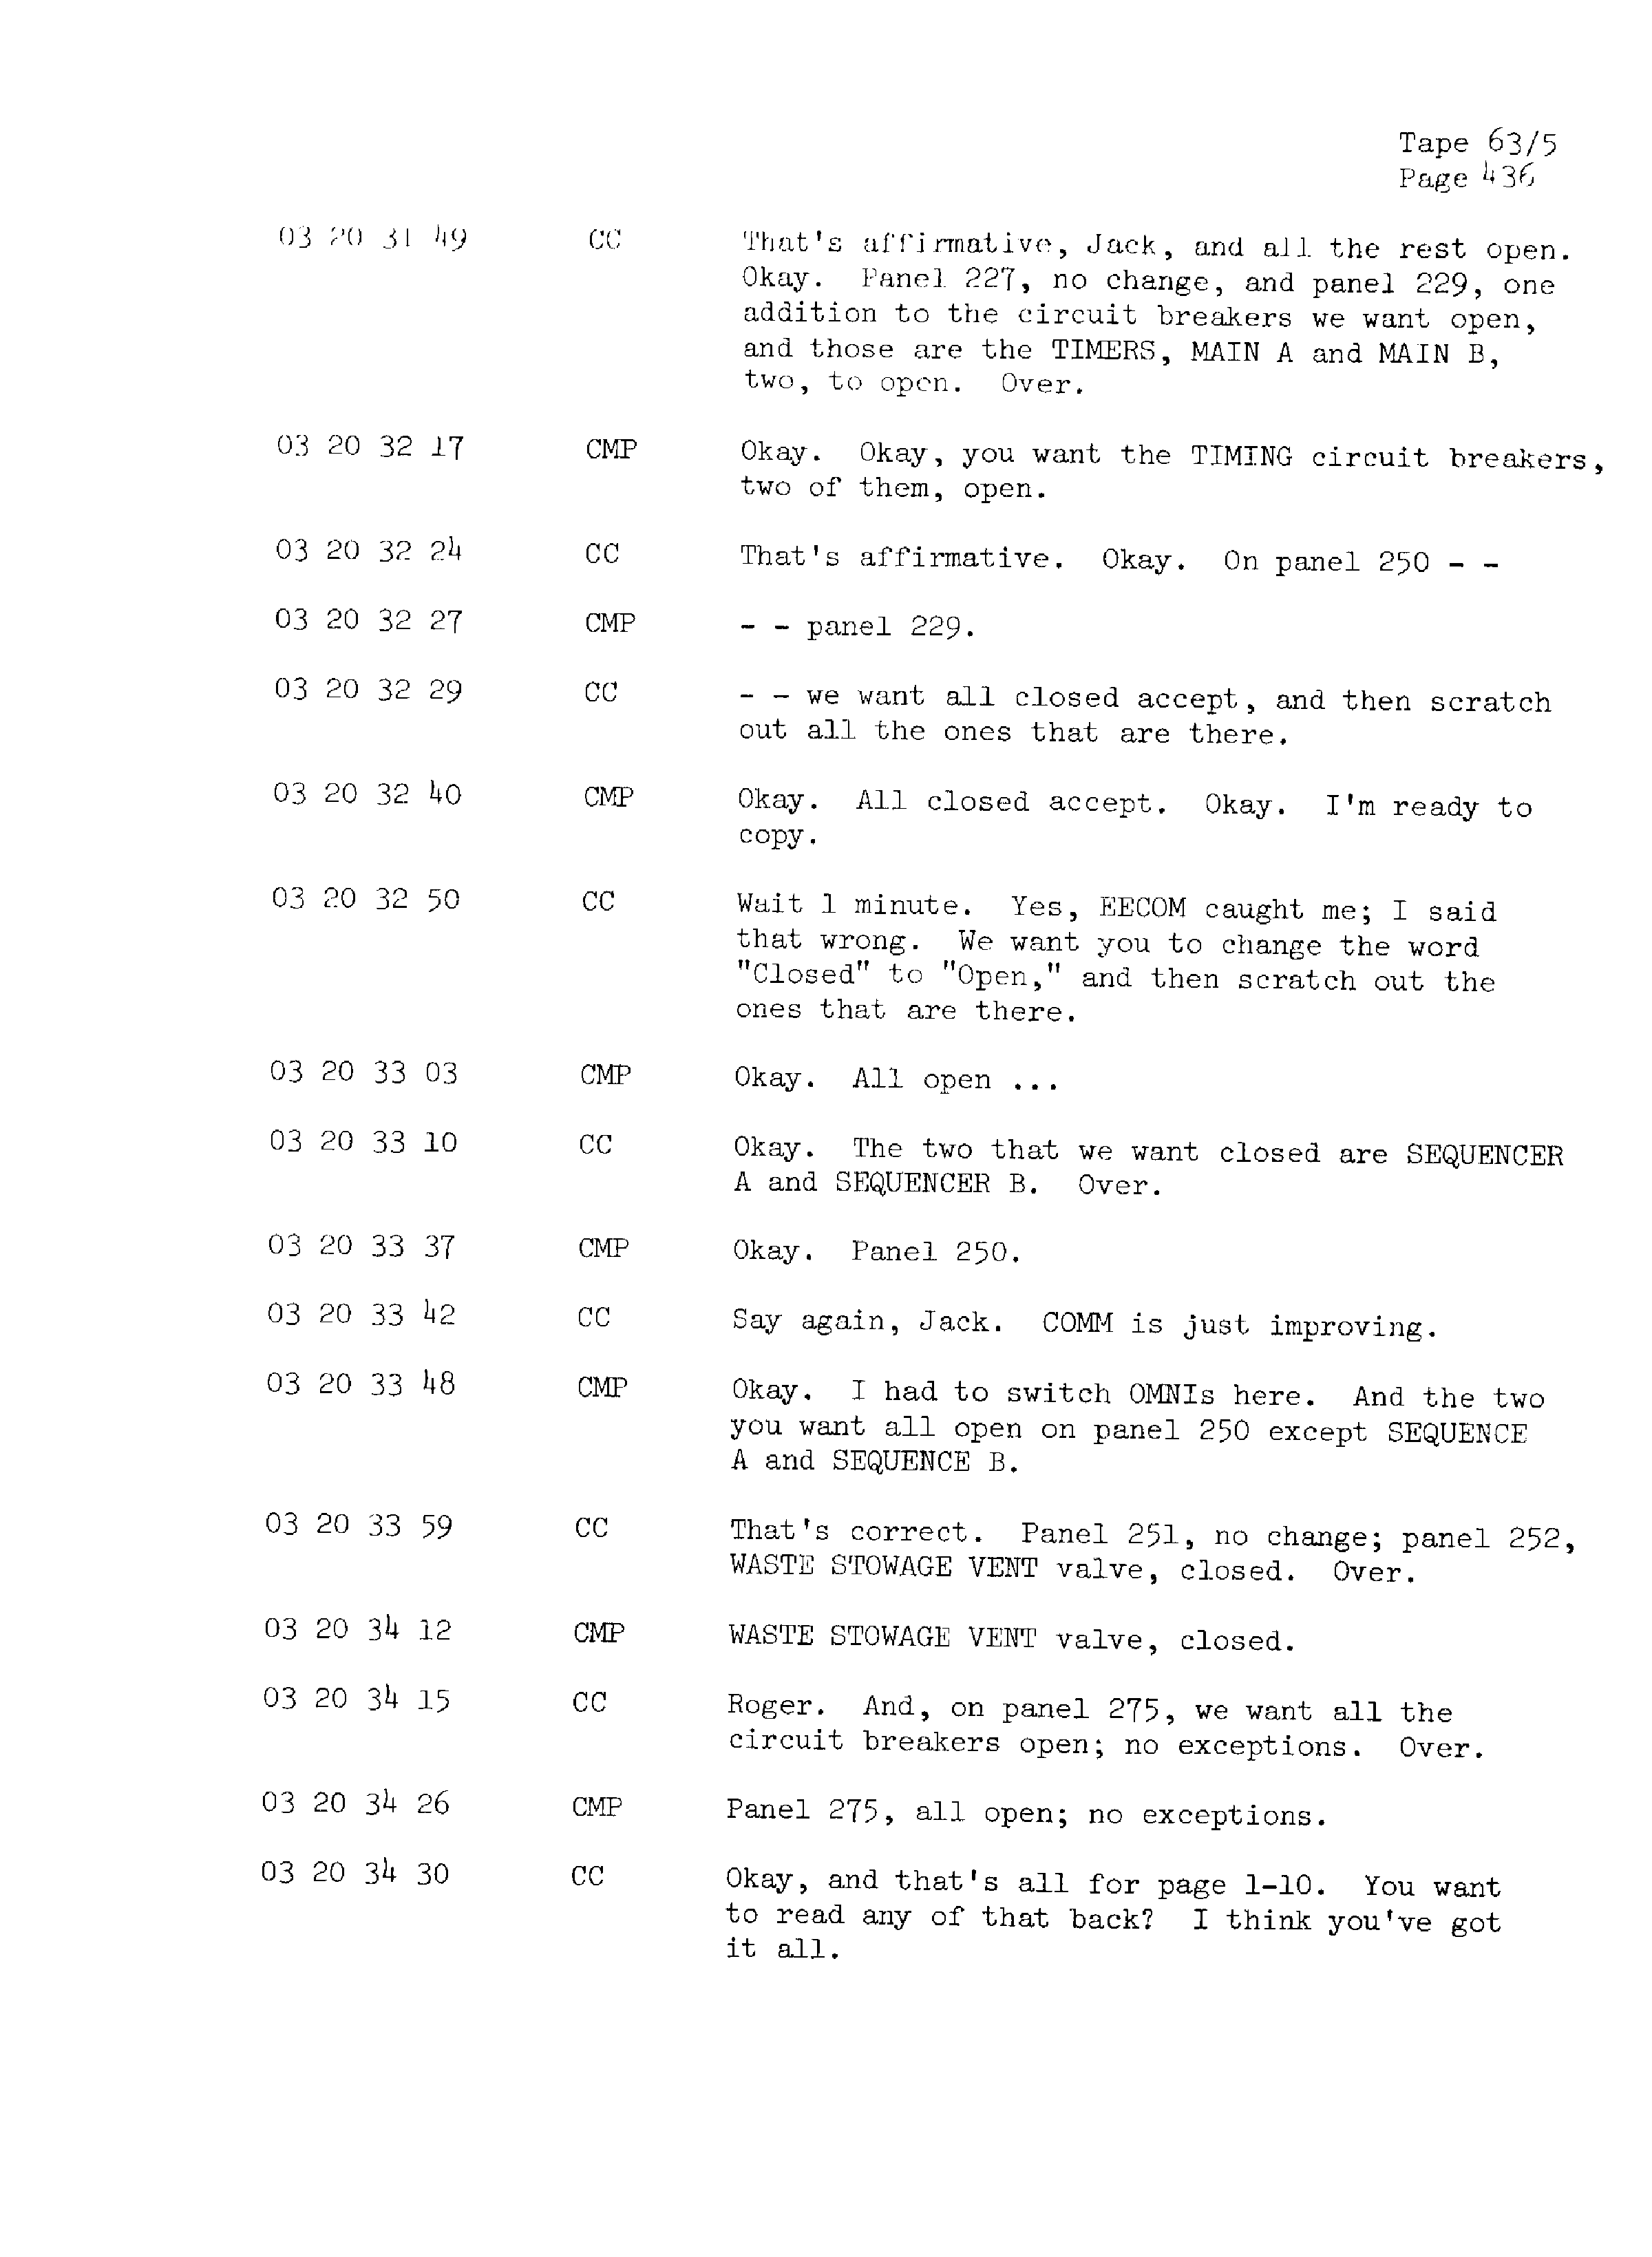 Page 443 of Apollo 13’s original transcript